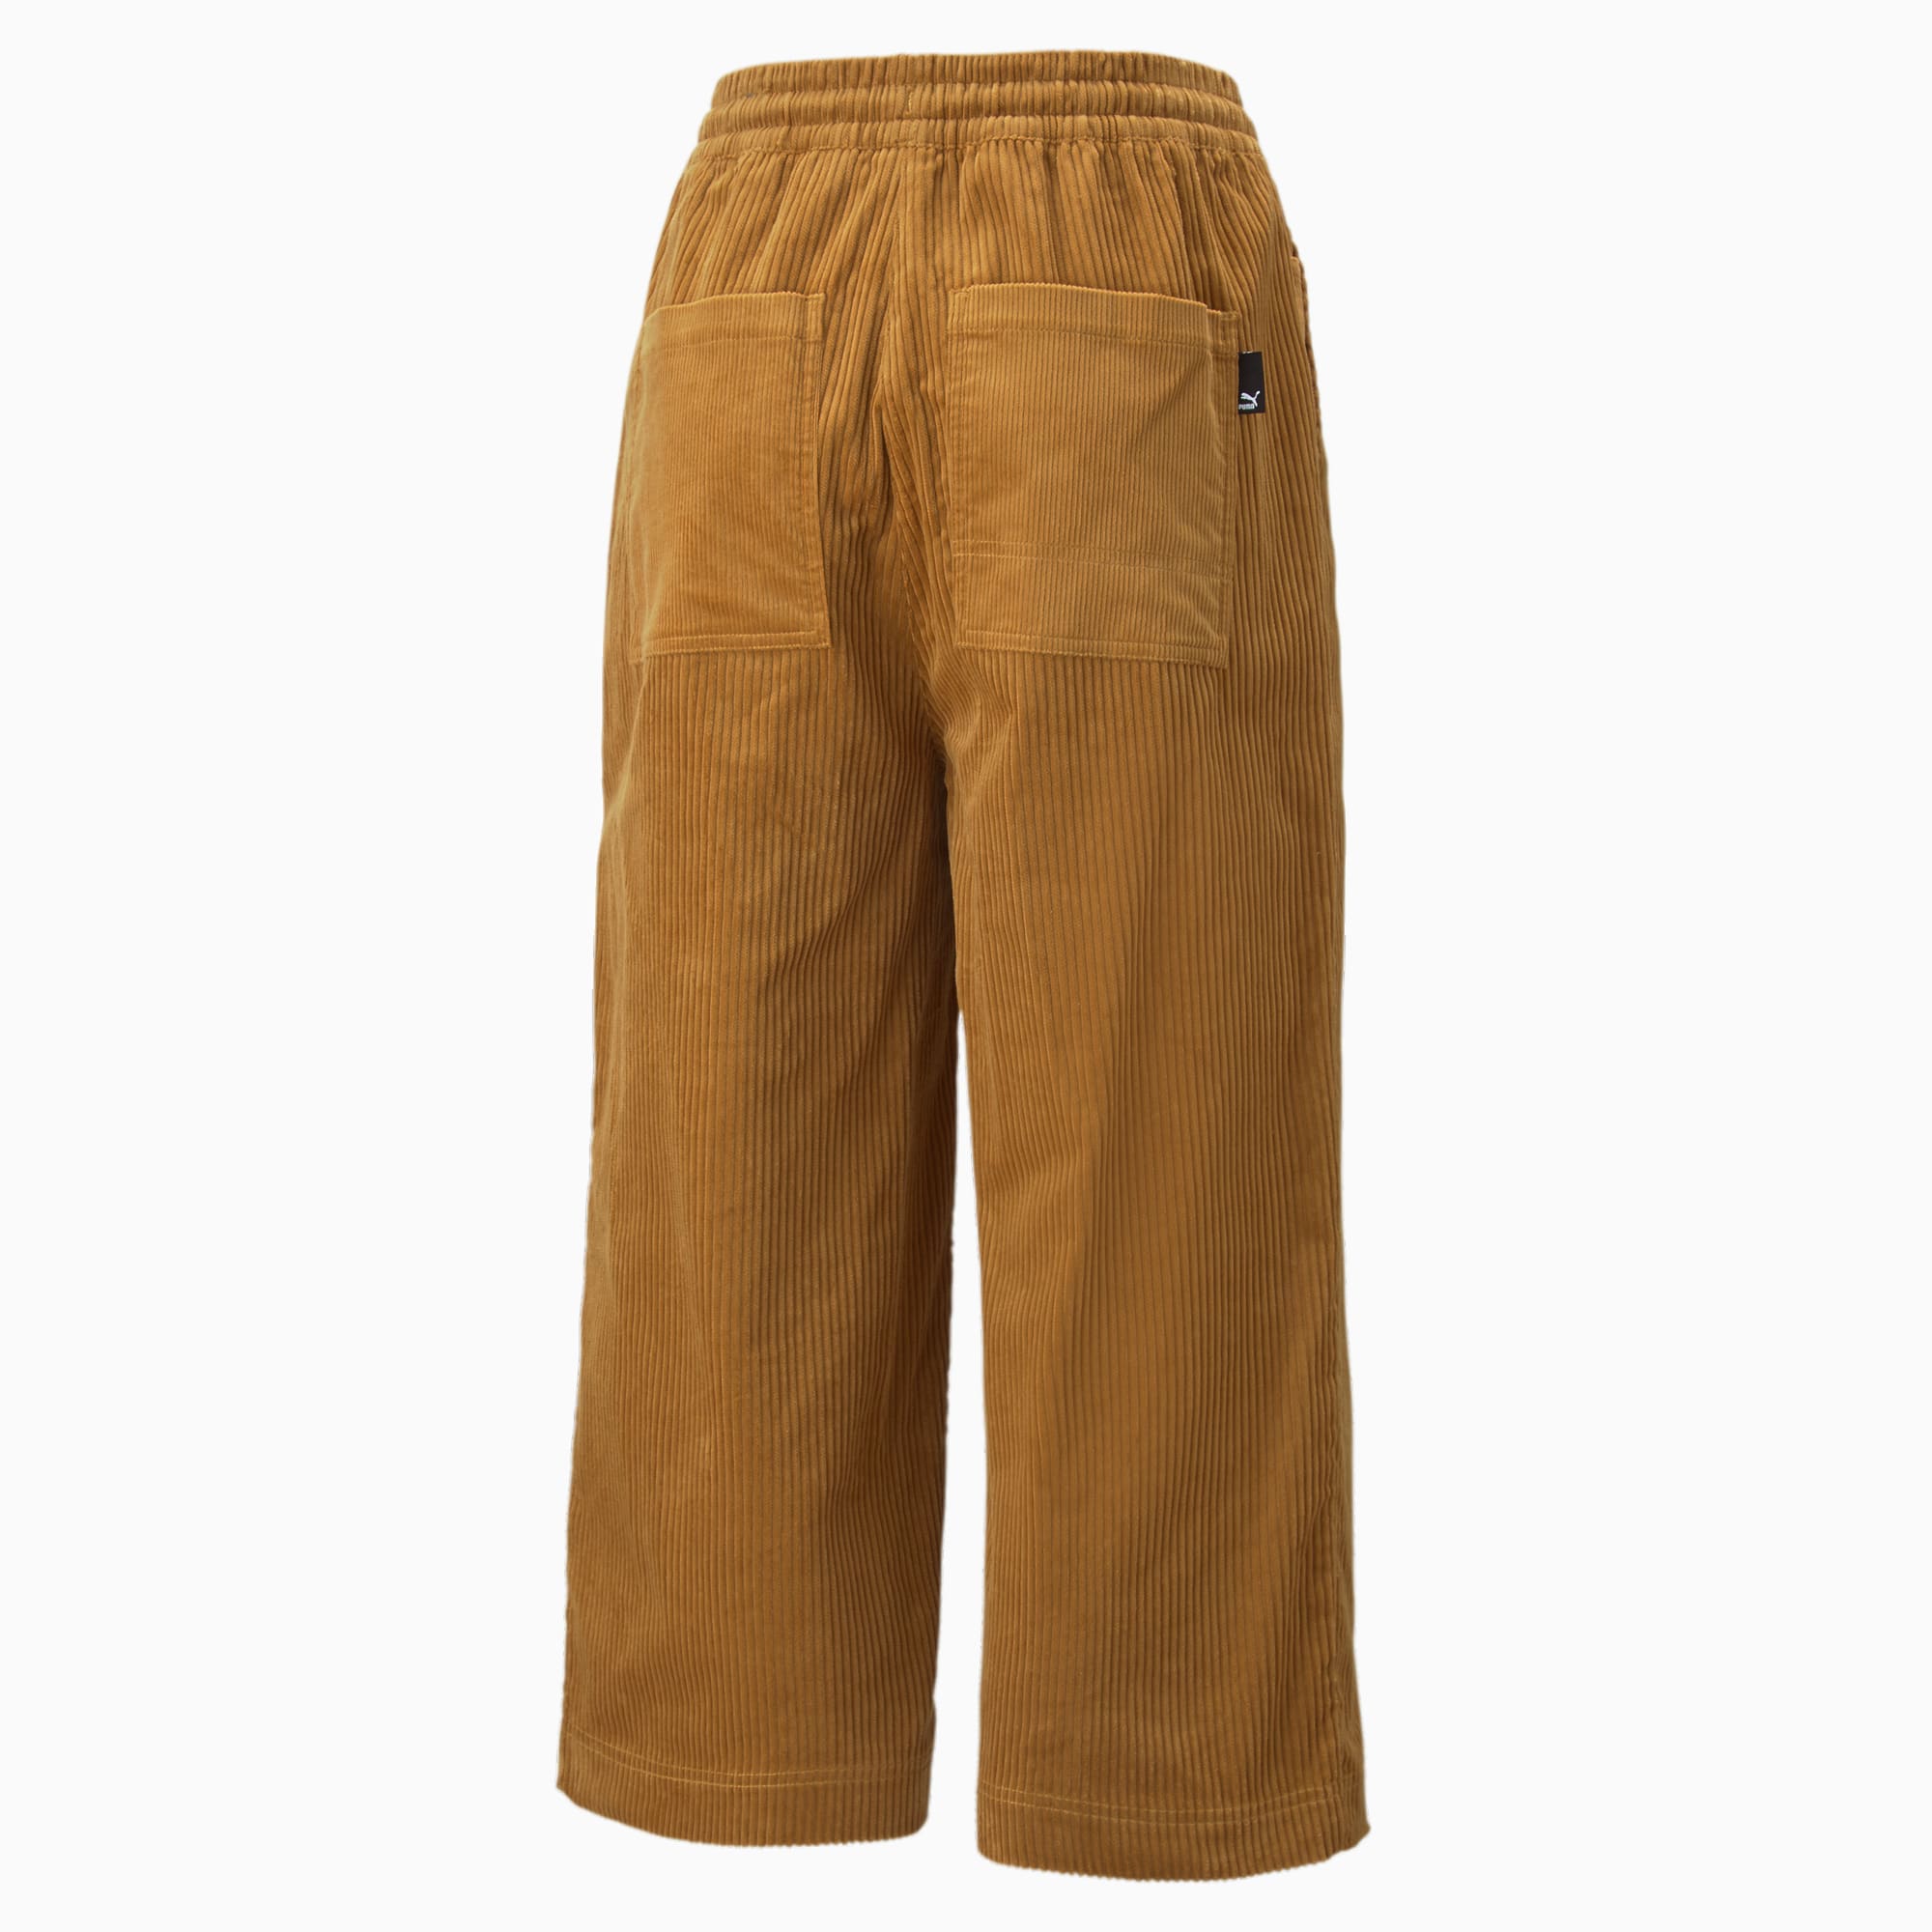 PUMA Downtown Corduroy Pants, Camel Men's Casual Trouser